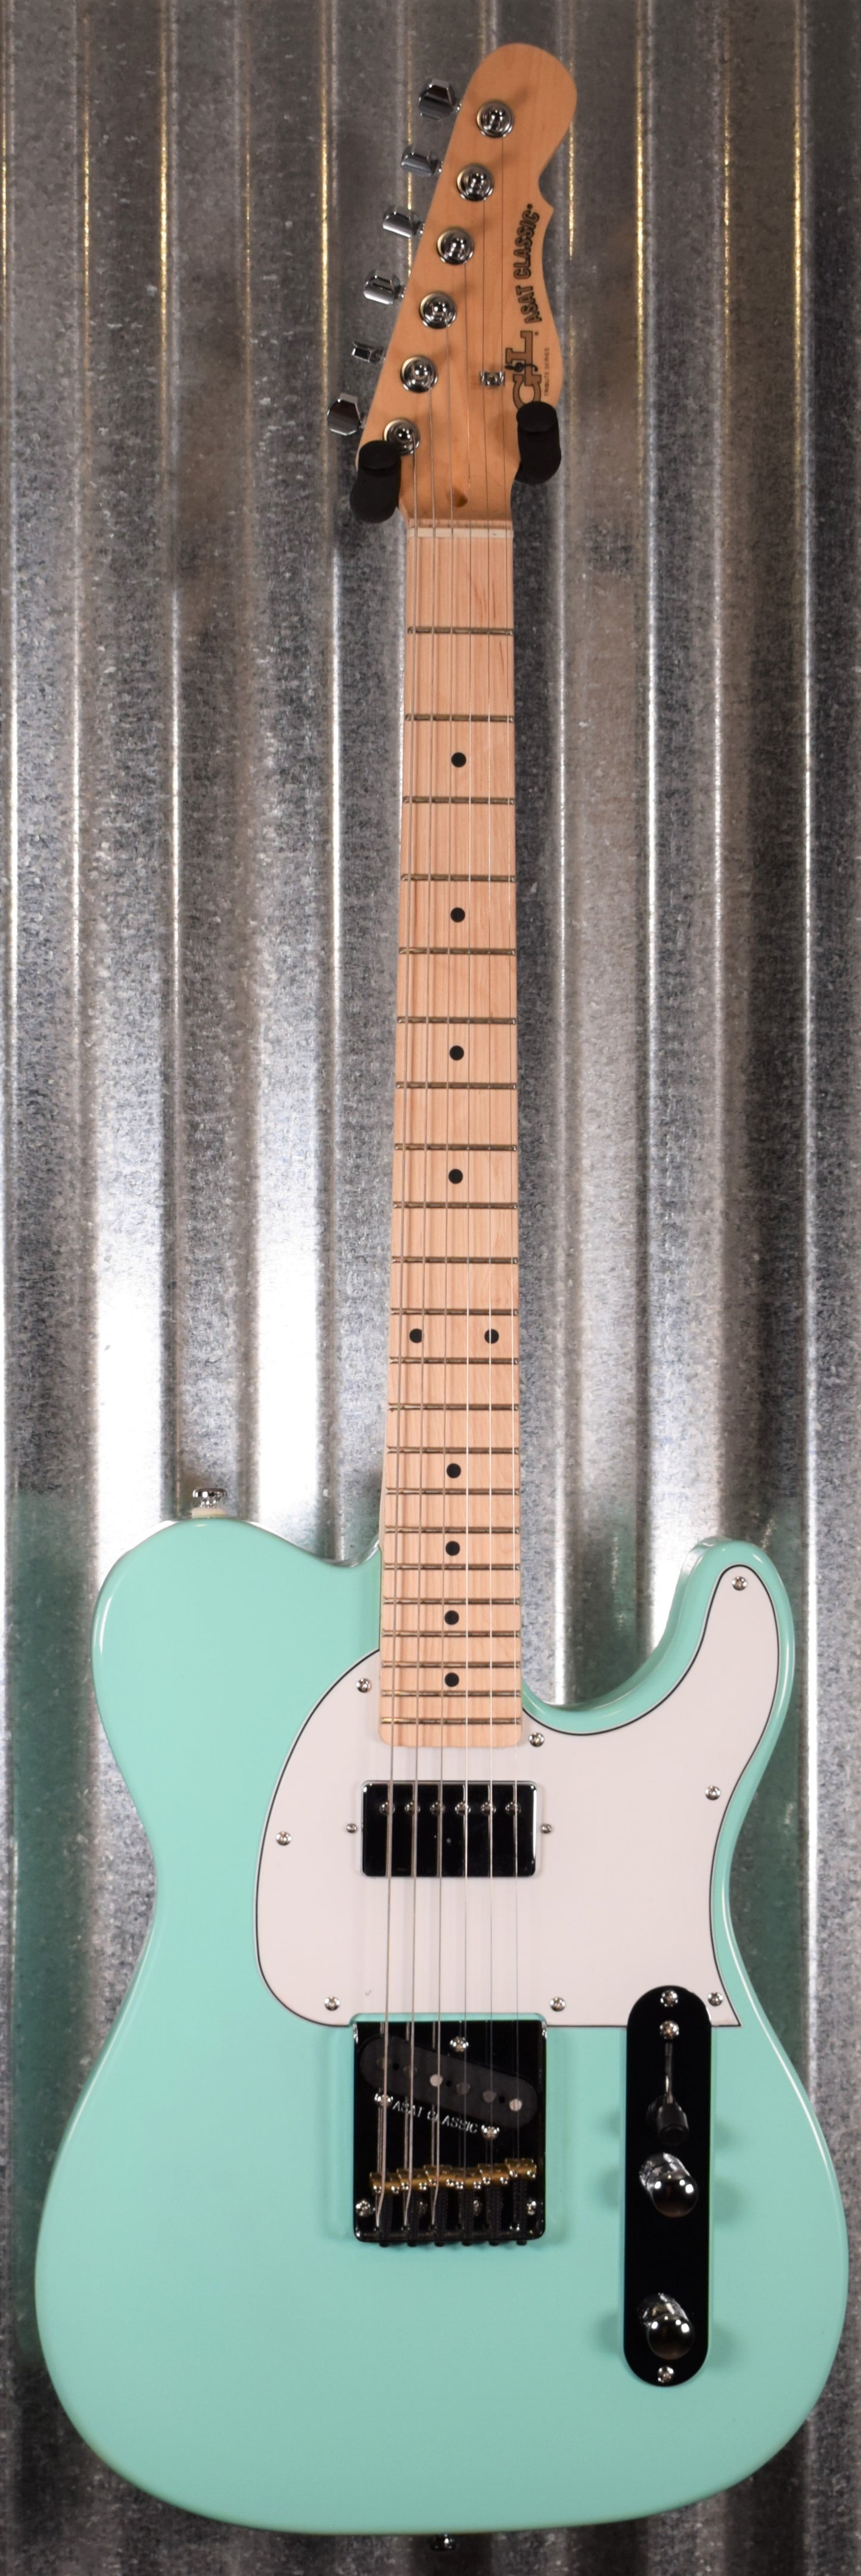 G&L Tribute ASAT Classic Bluesboy Seafoam Green Guitar #0167 Demo